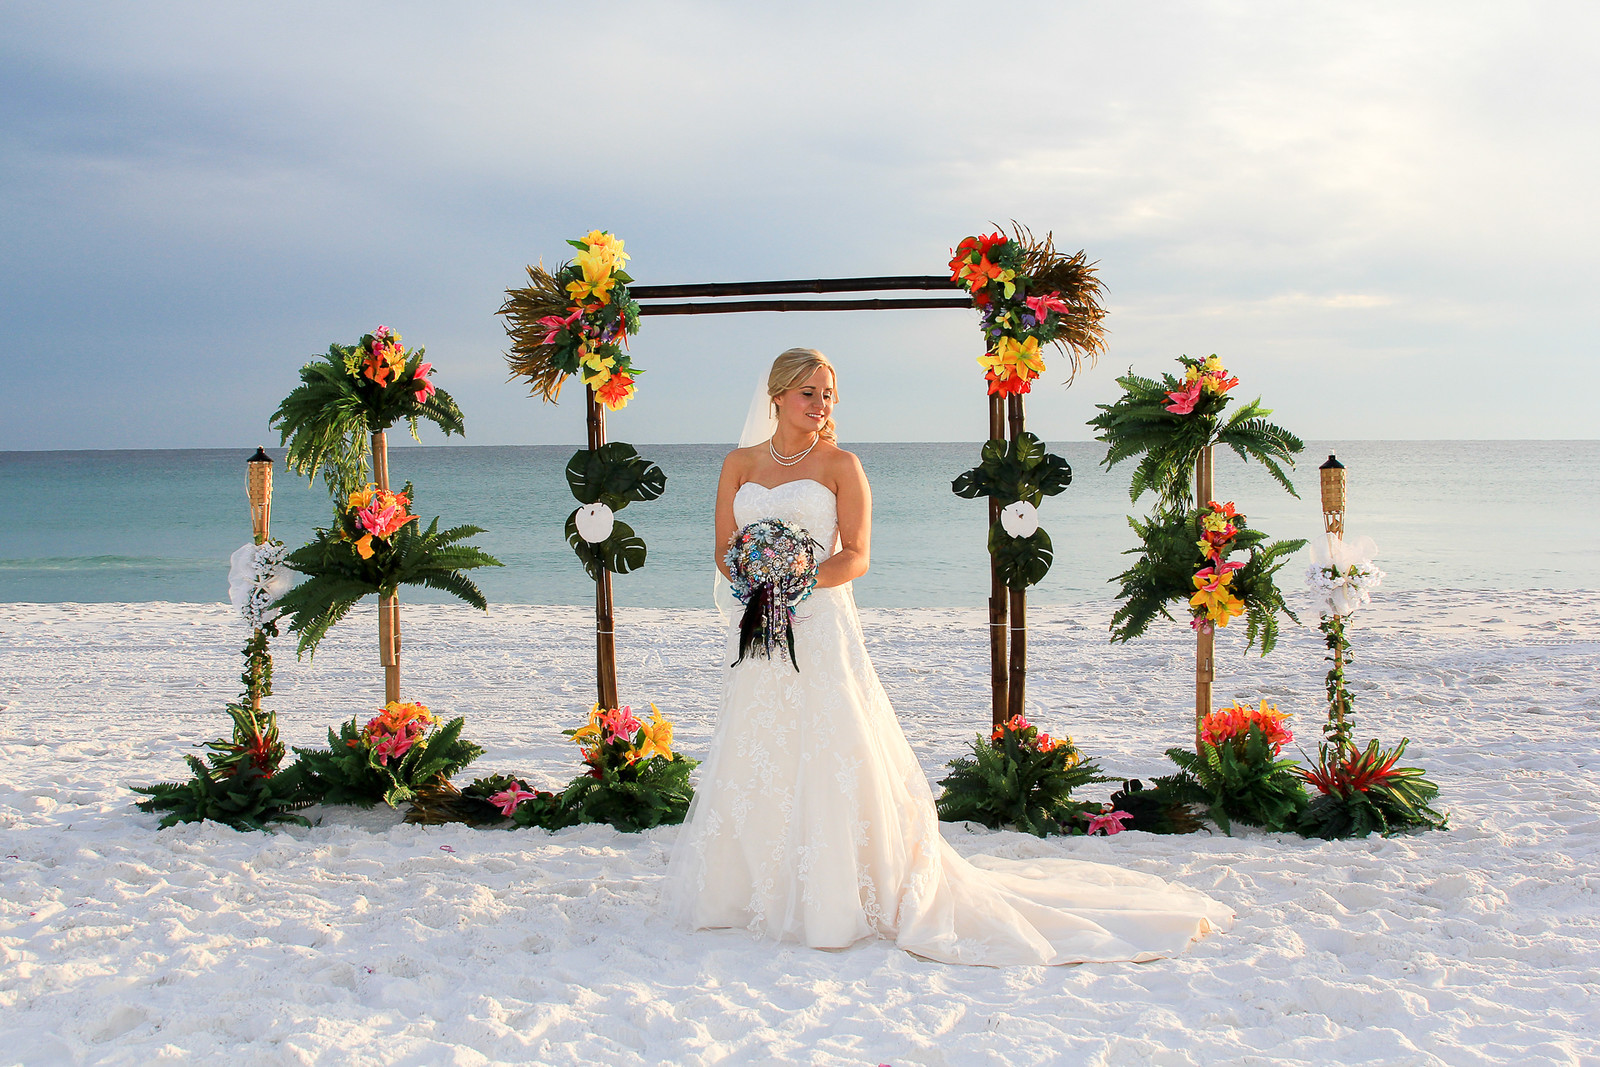 Beach Weddings Destin Fl
 Destin Beach Wedding Locations Destin Fl Beach Weddings